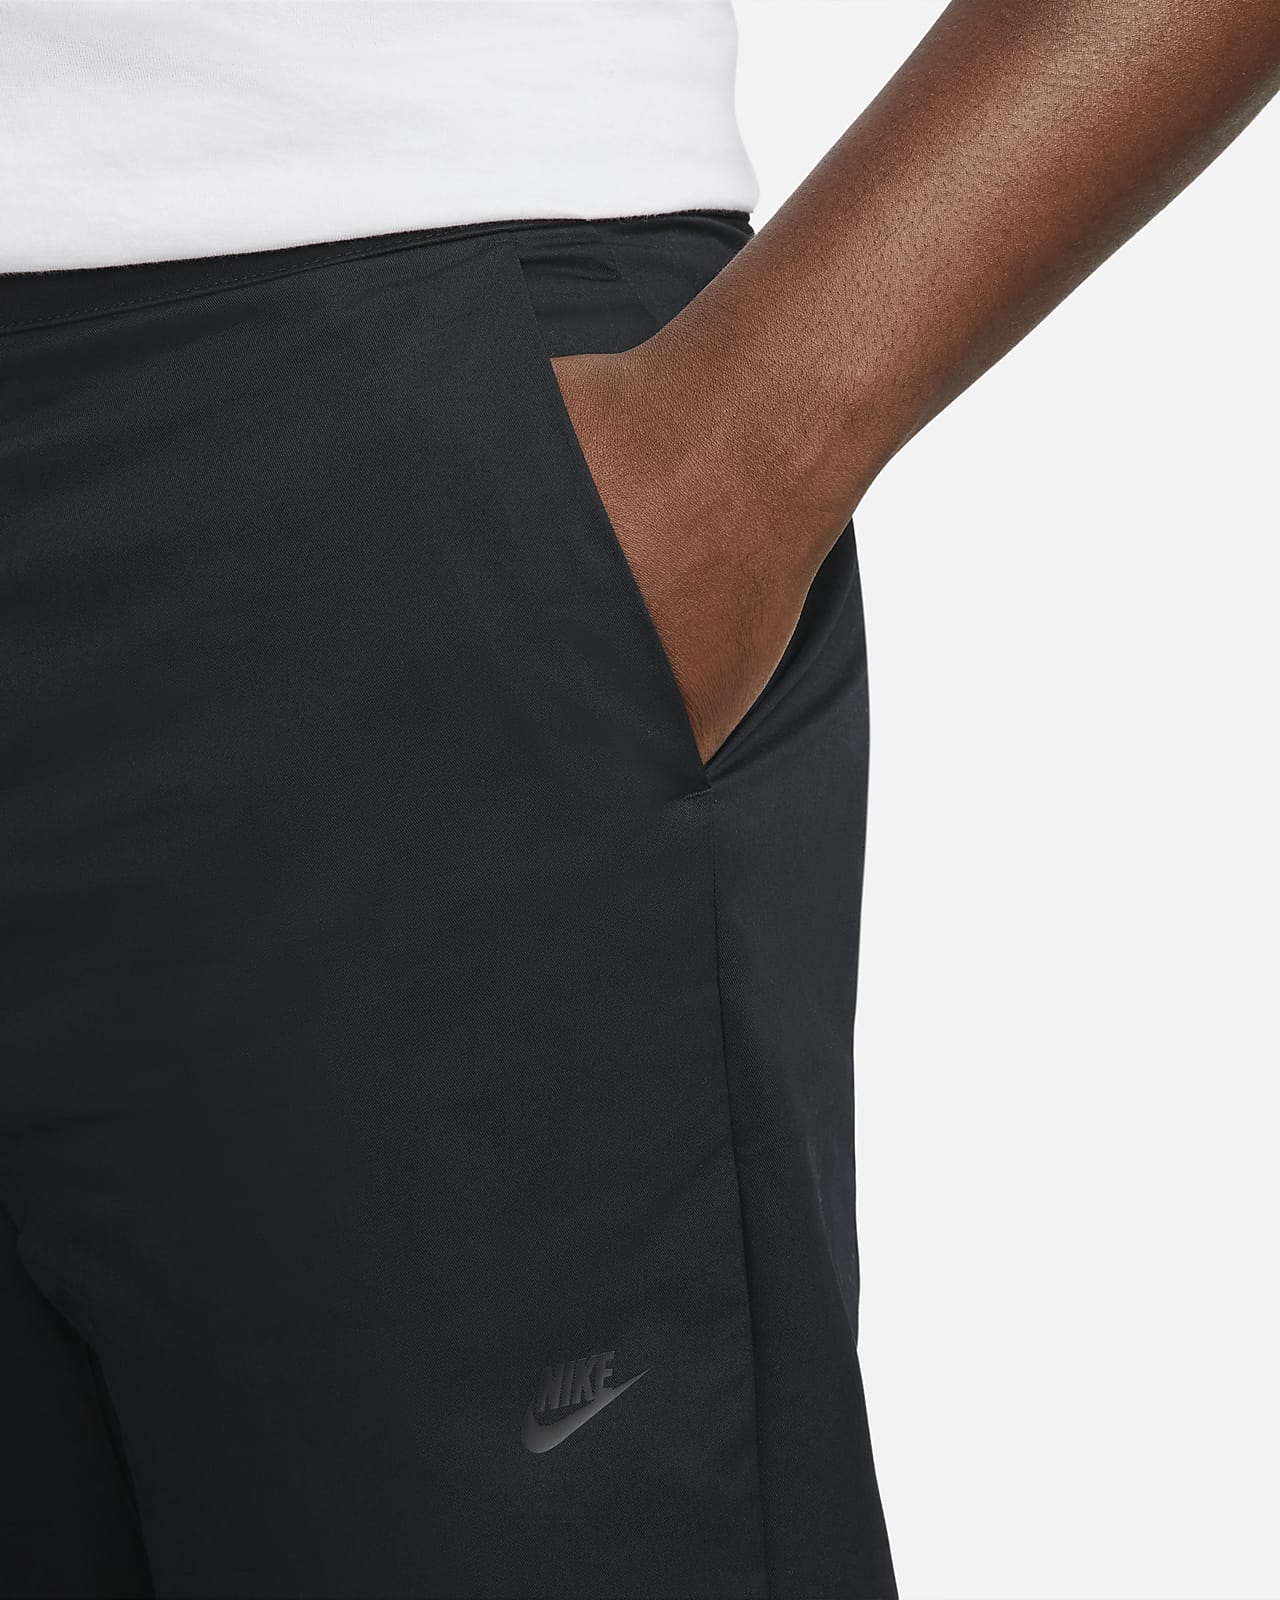 Pantalones forro para hombre Nike Style Essentials. Nike.com